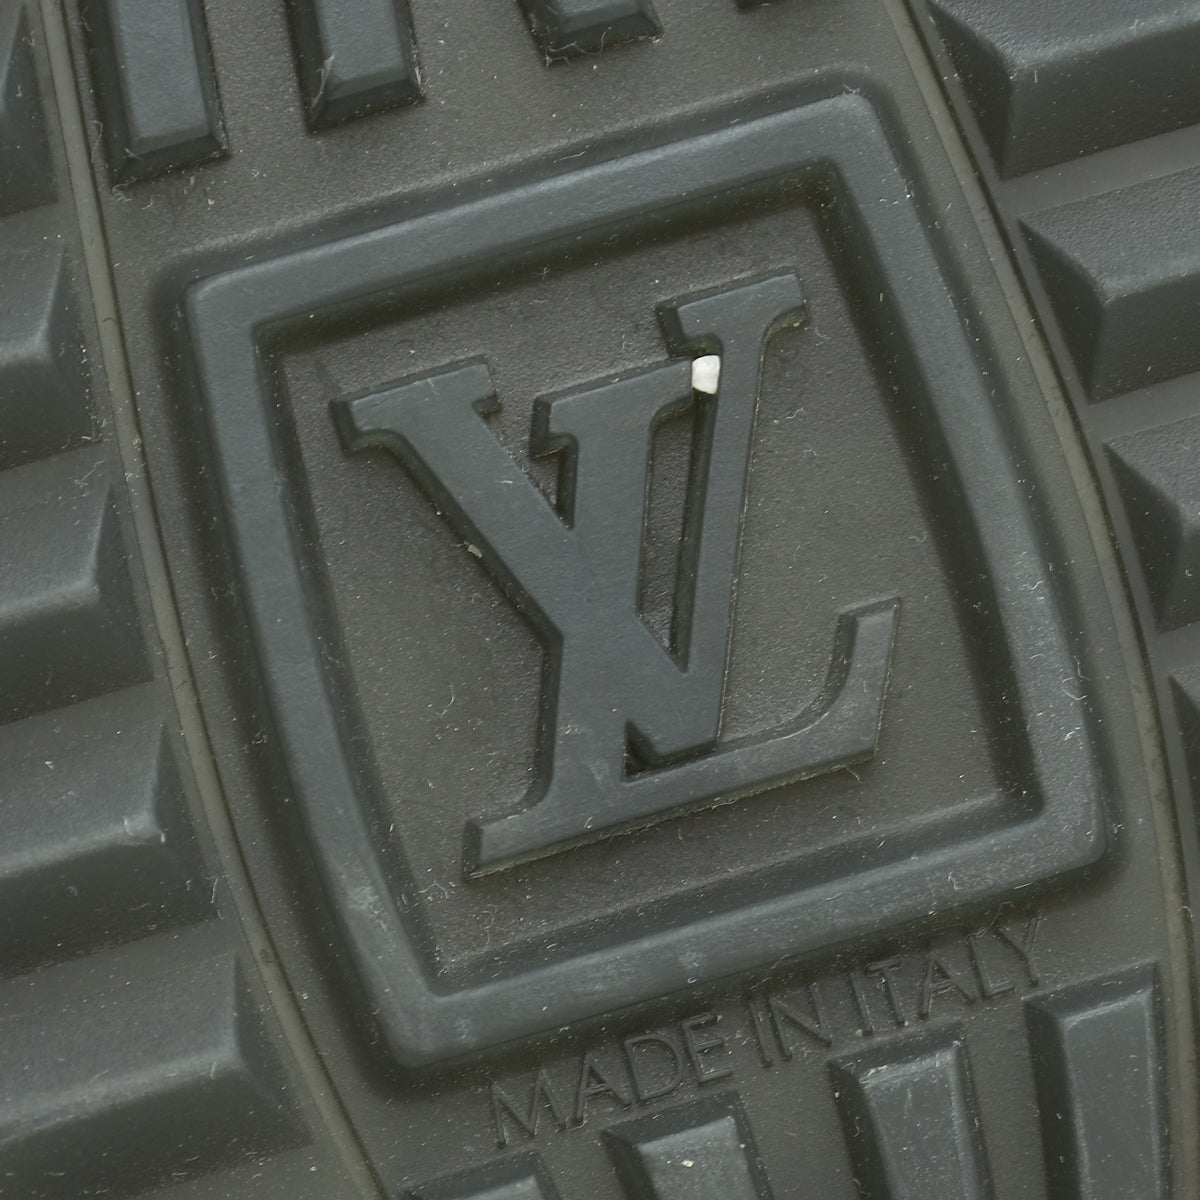 Louis Vuitton Bicolor Run Away Sneakers 36